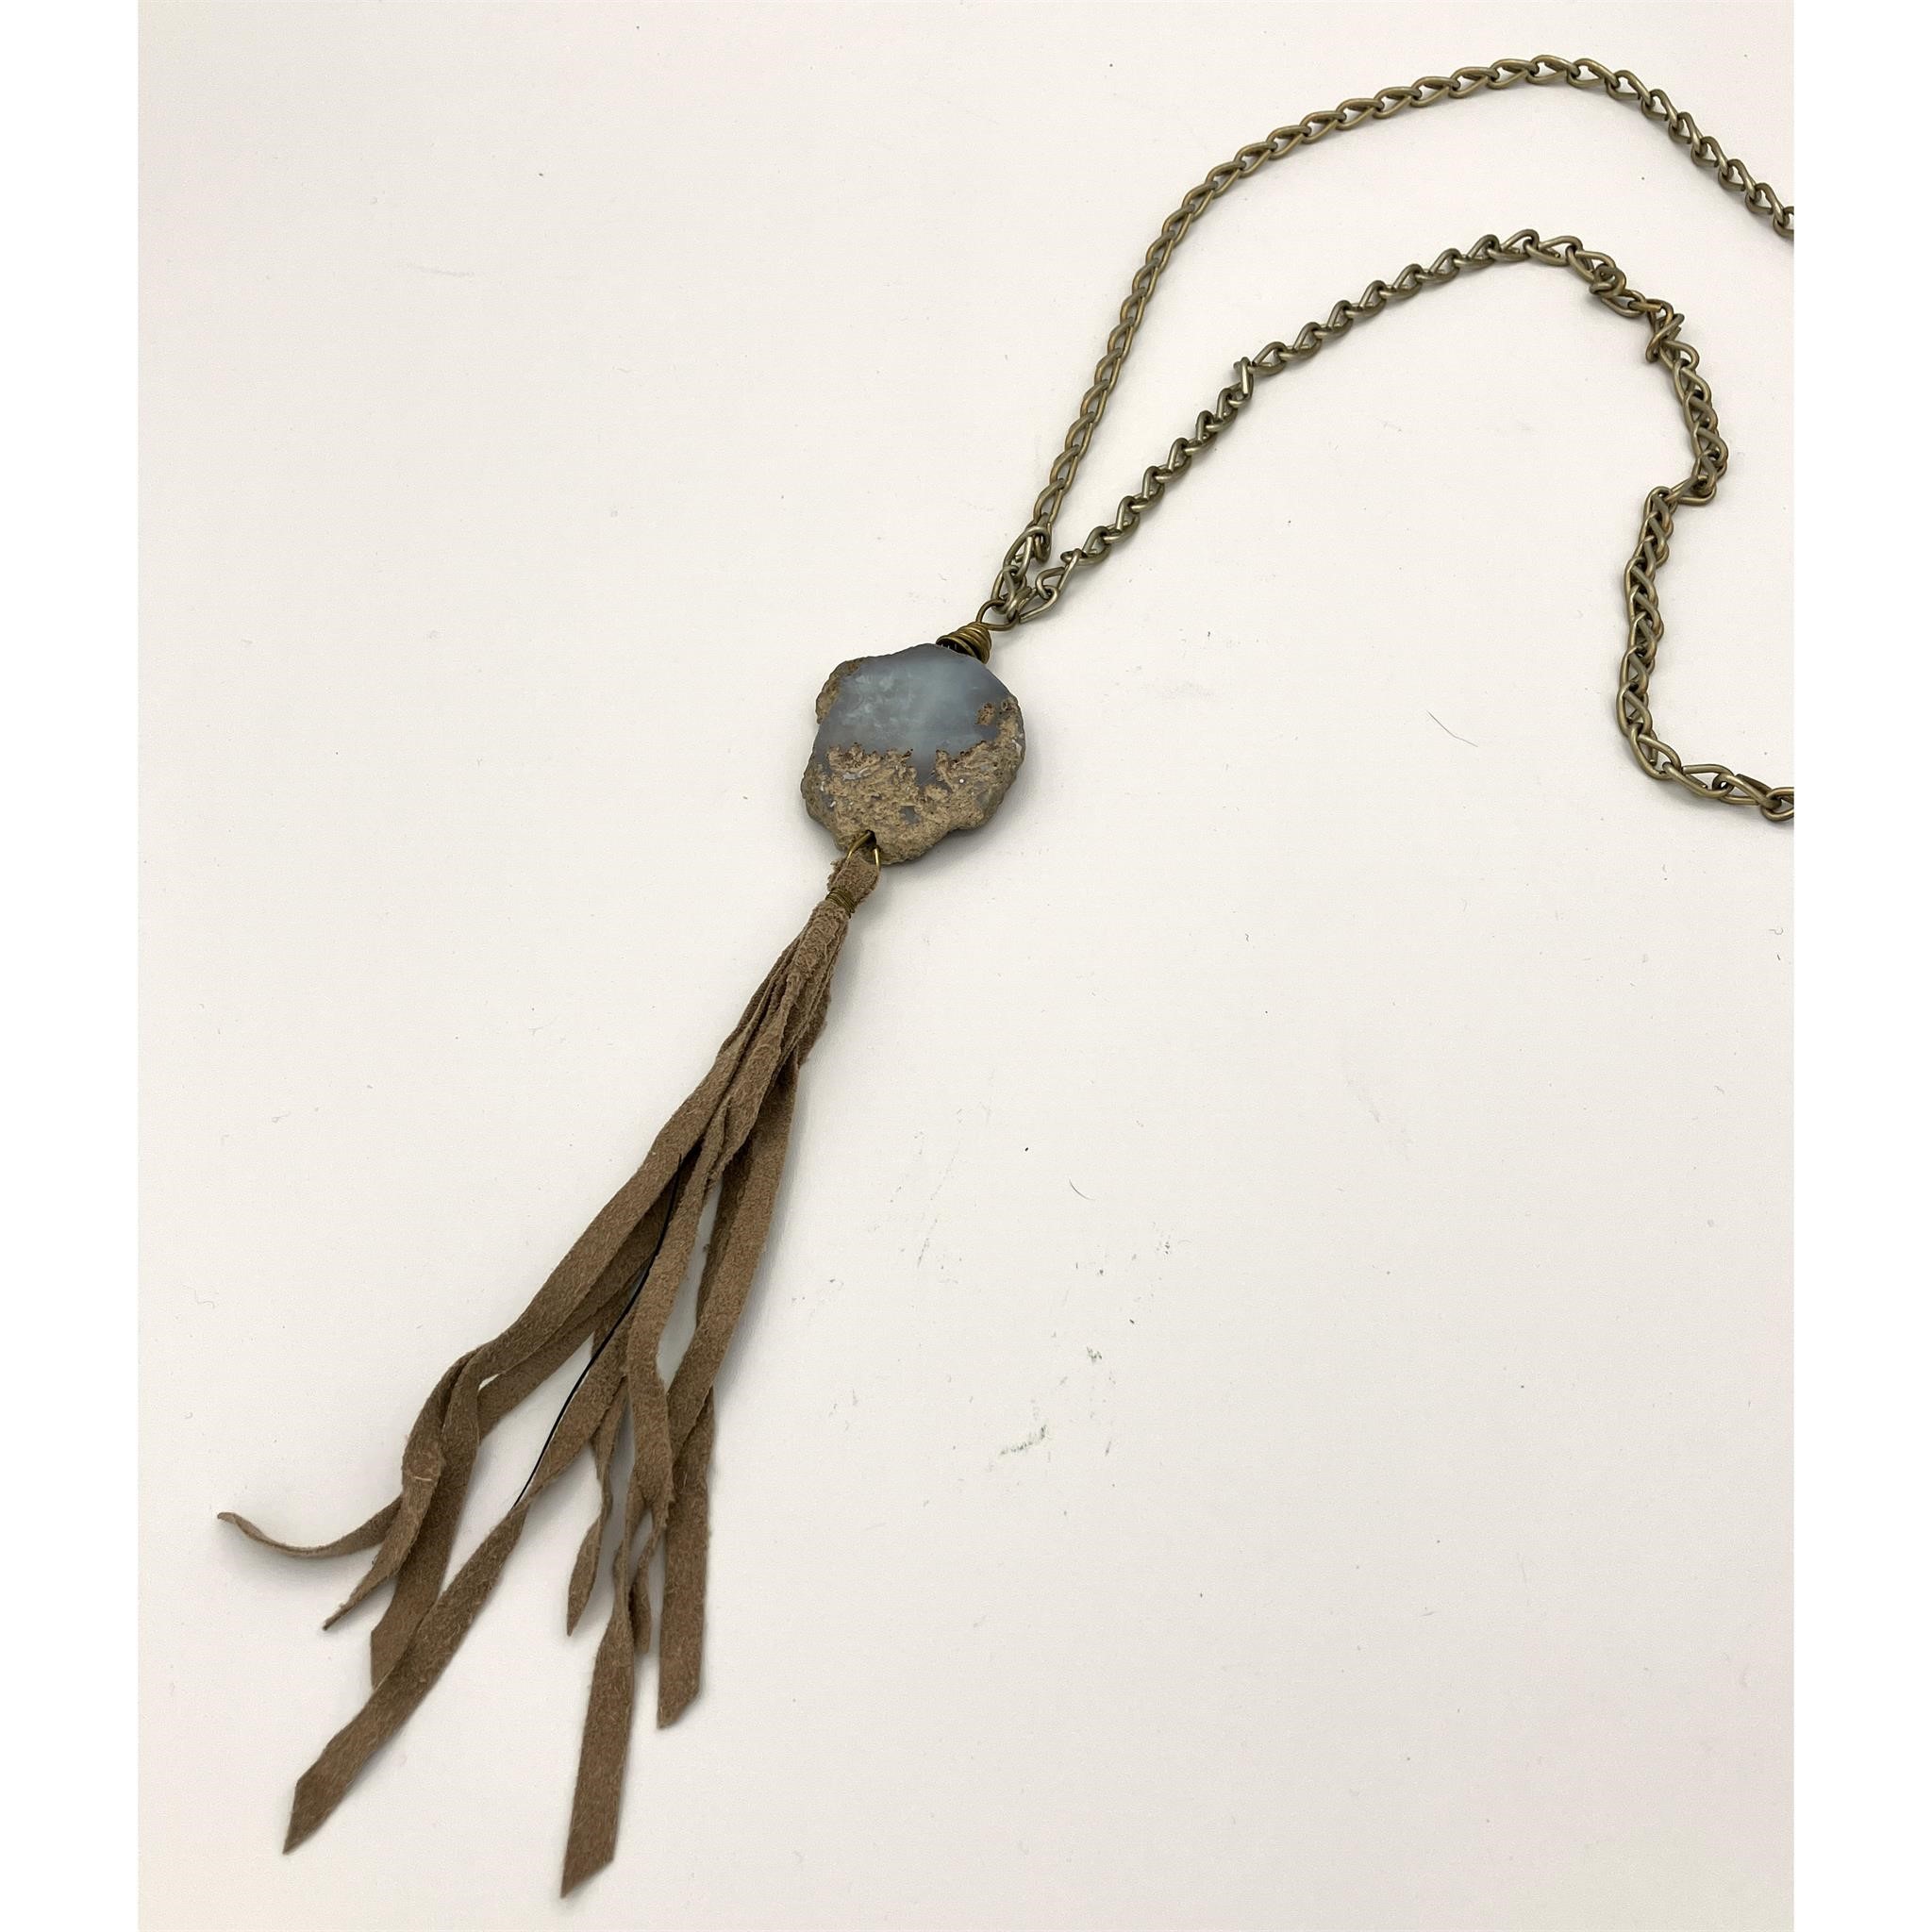 Tasseled Leather & Stone Pendant Necklace